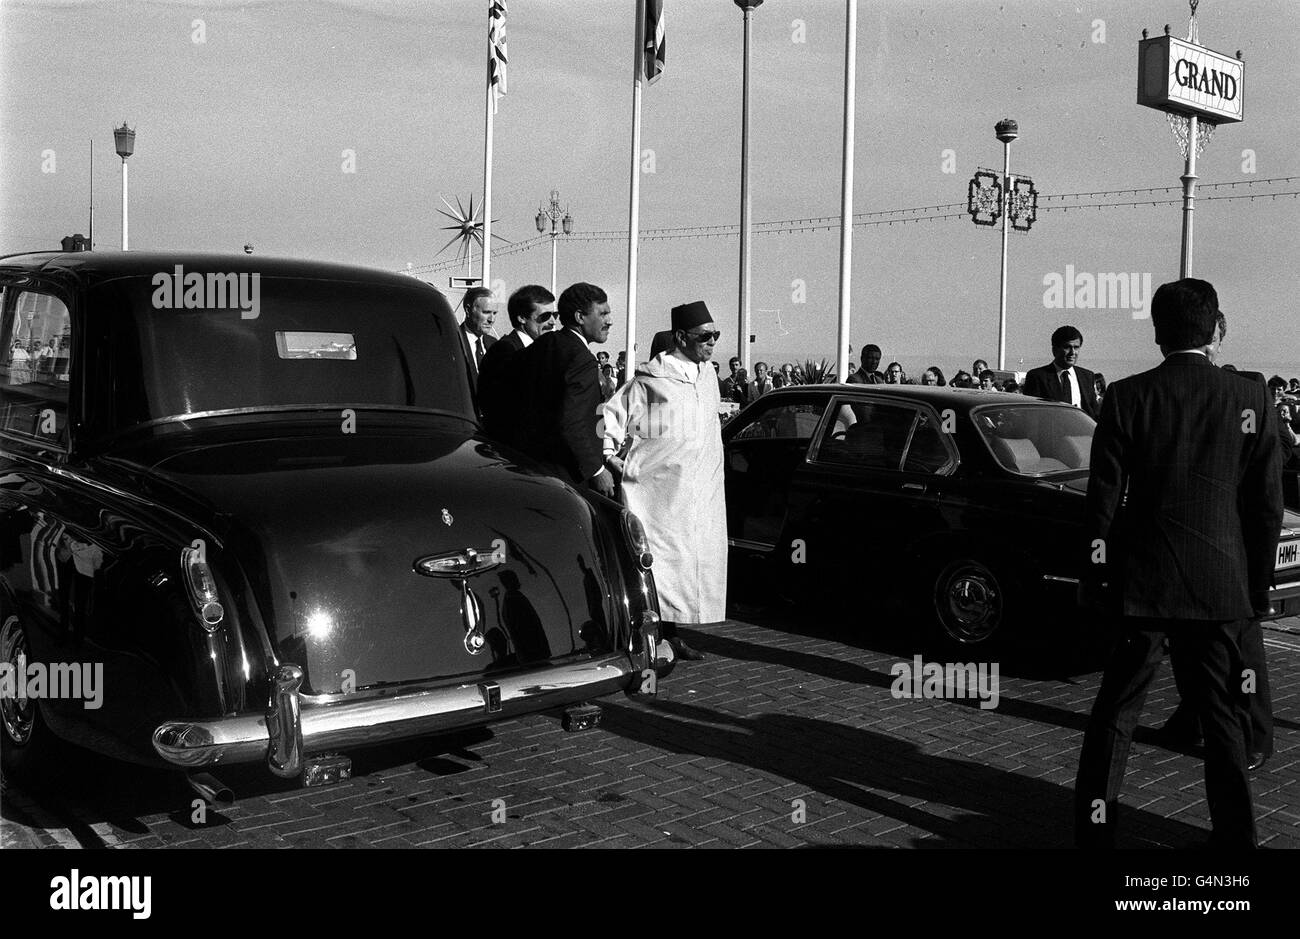 König Hassan von Marokko, der zu Beginn seines viertägigen Aufenthalts in Großbritannien im Grand Hotel an der Strandpromenade von Brighton ankam. Stockfoto